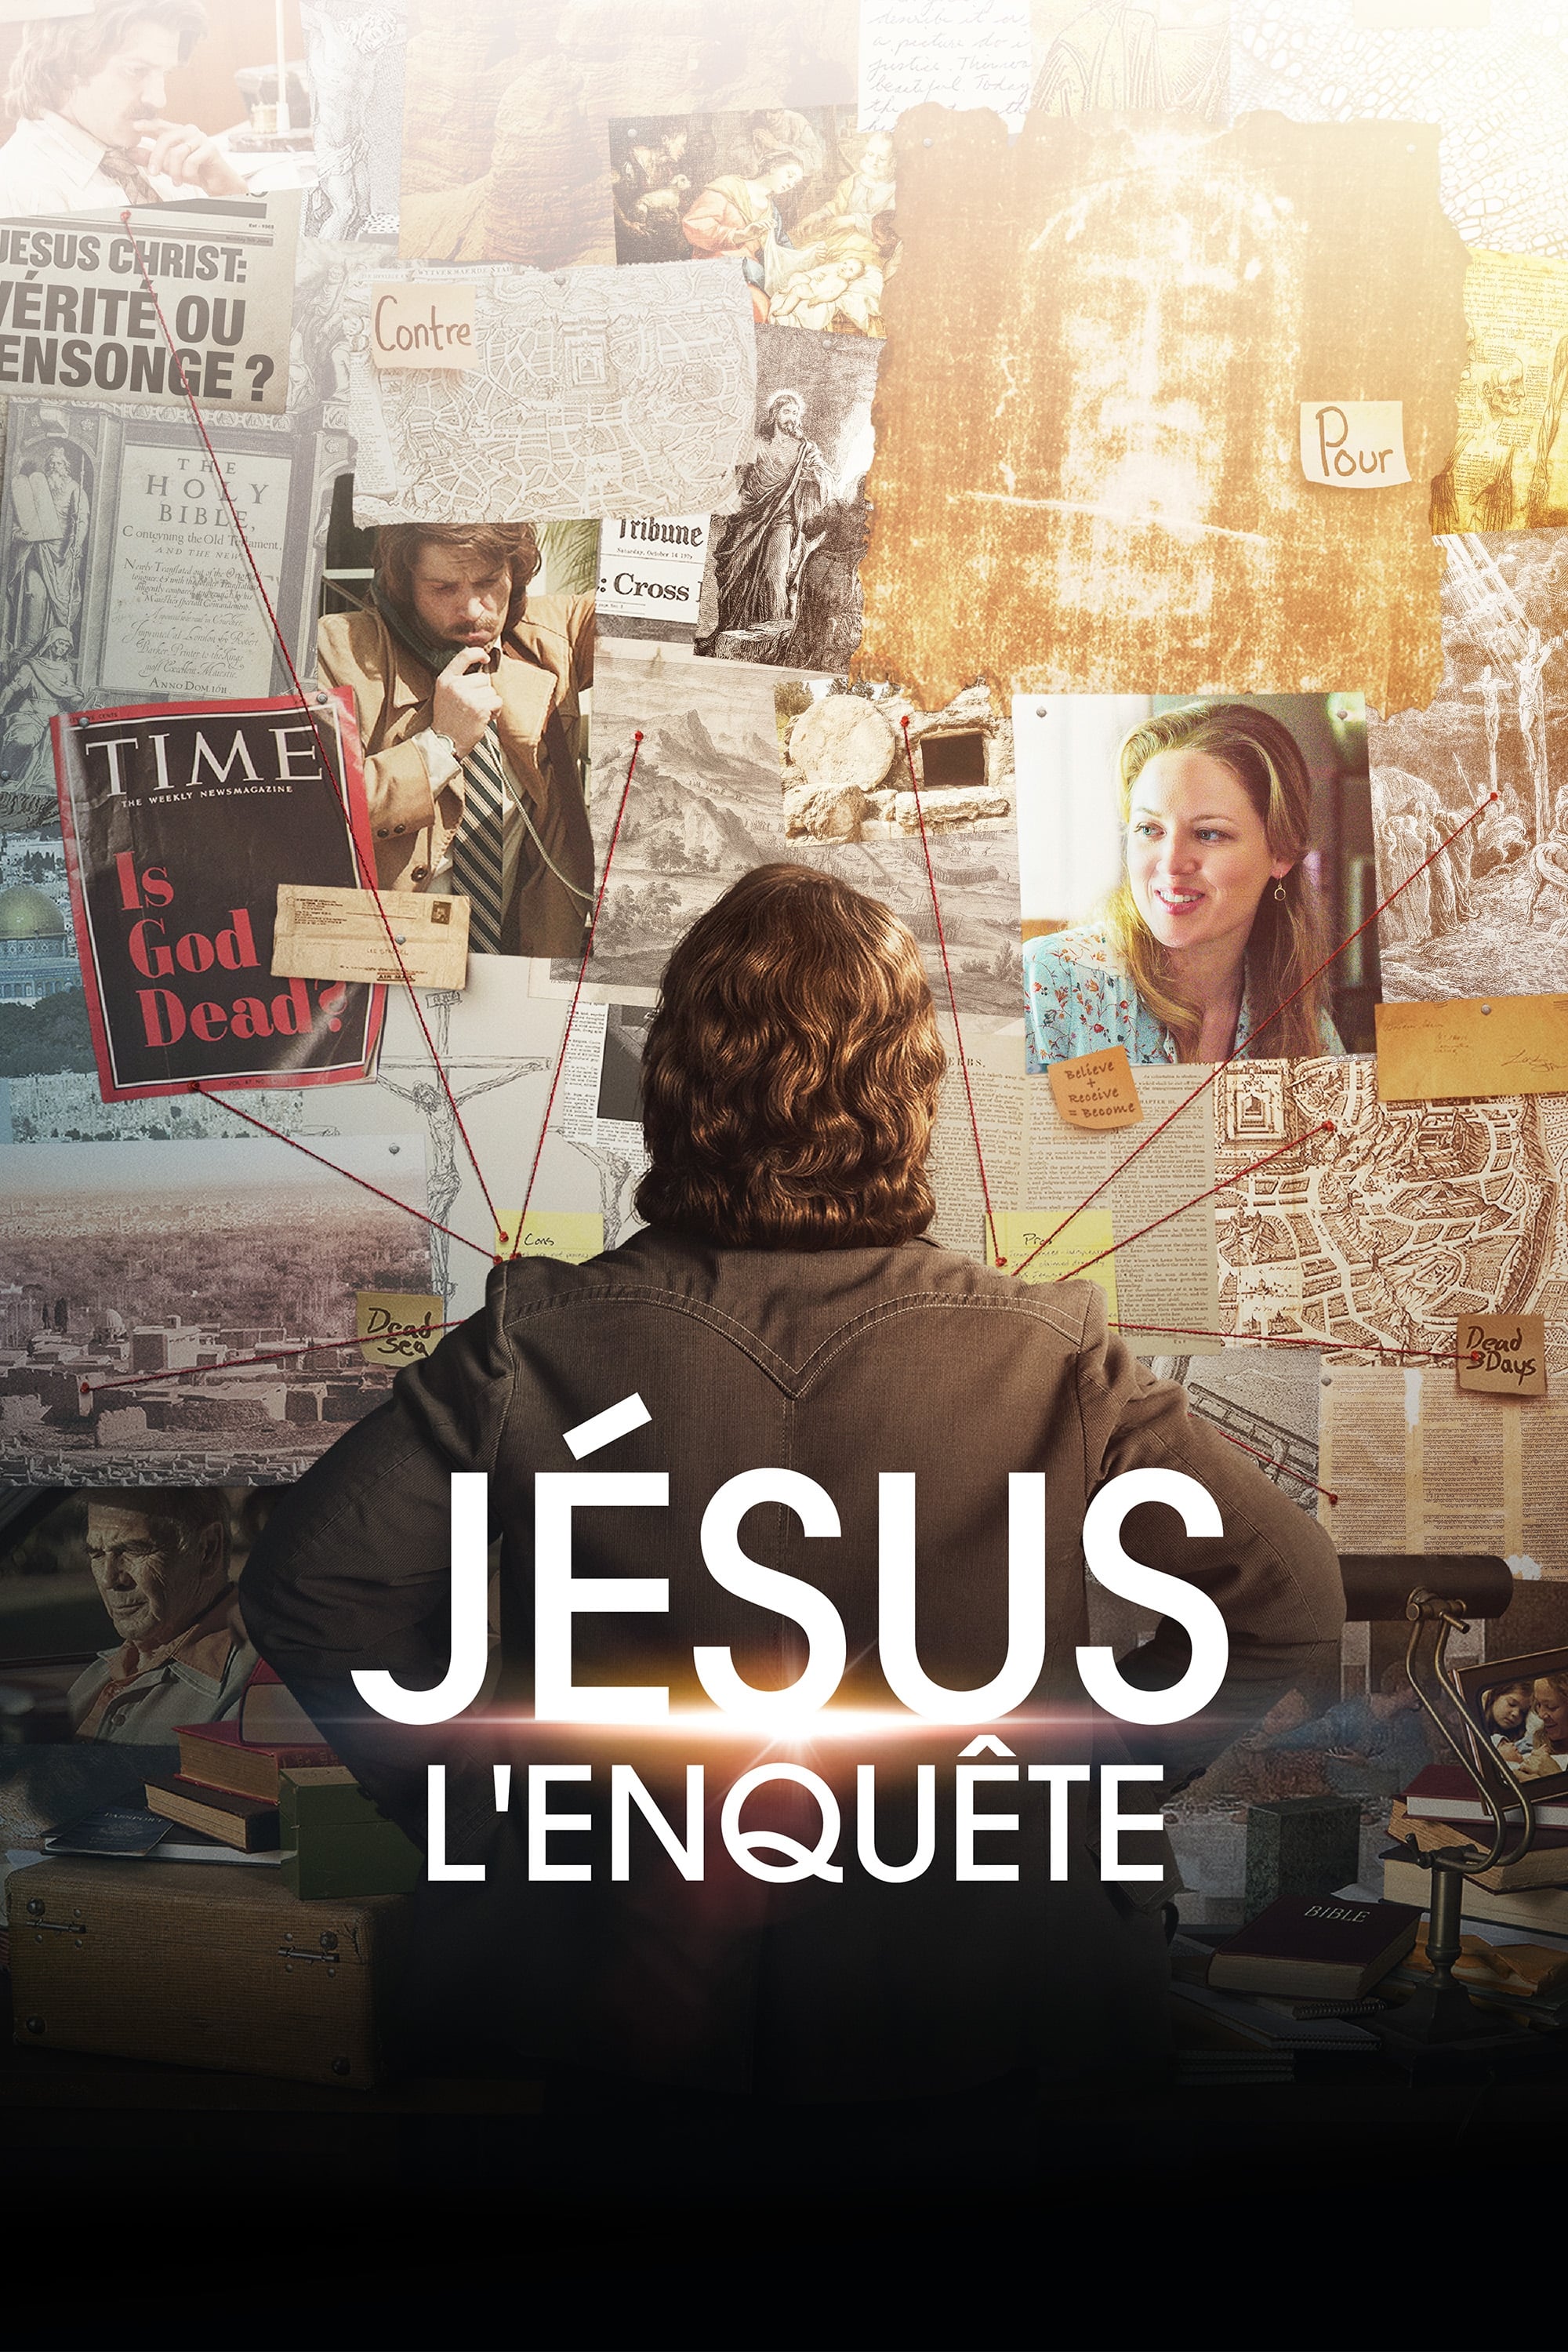 Jésus, l'enquête (2018) - Film en entier et en français ! A6XJqgGiYvdNMPoKSGWP7lNXHBq